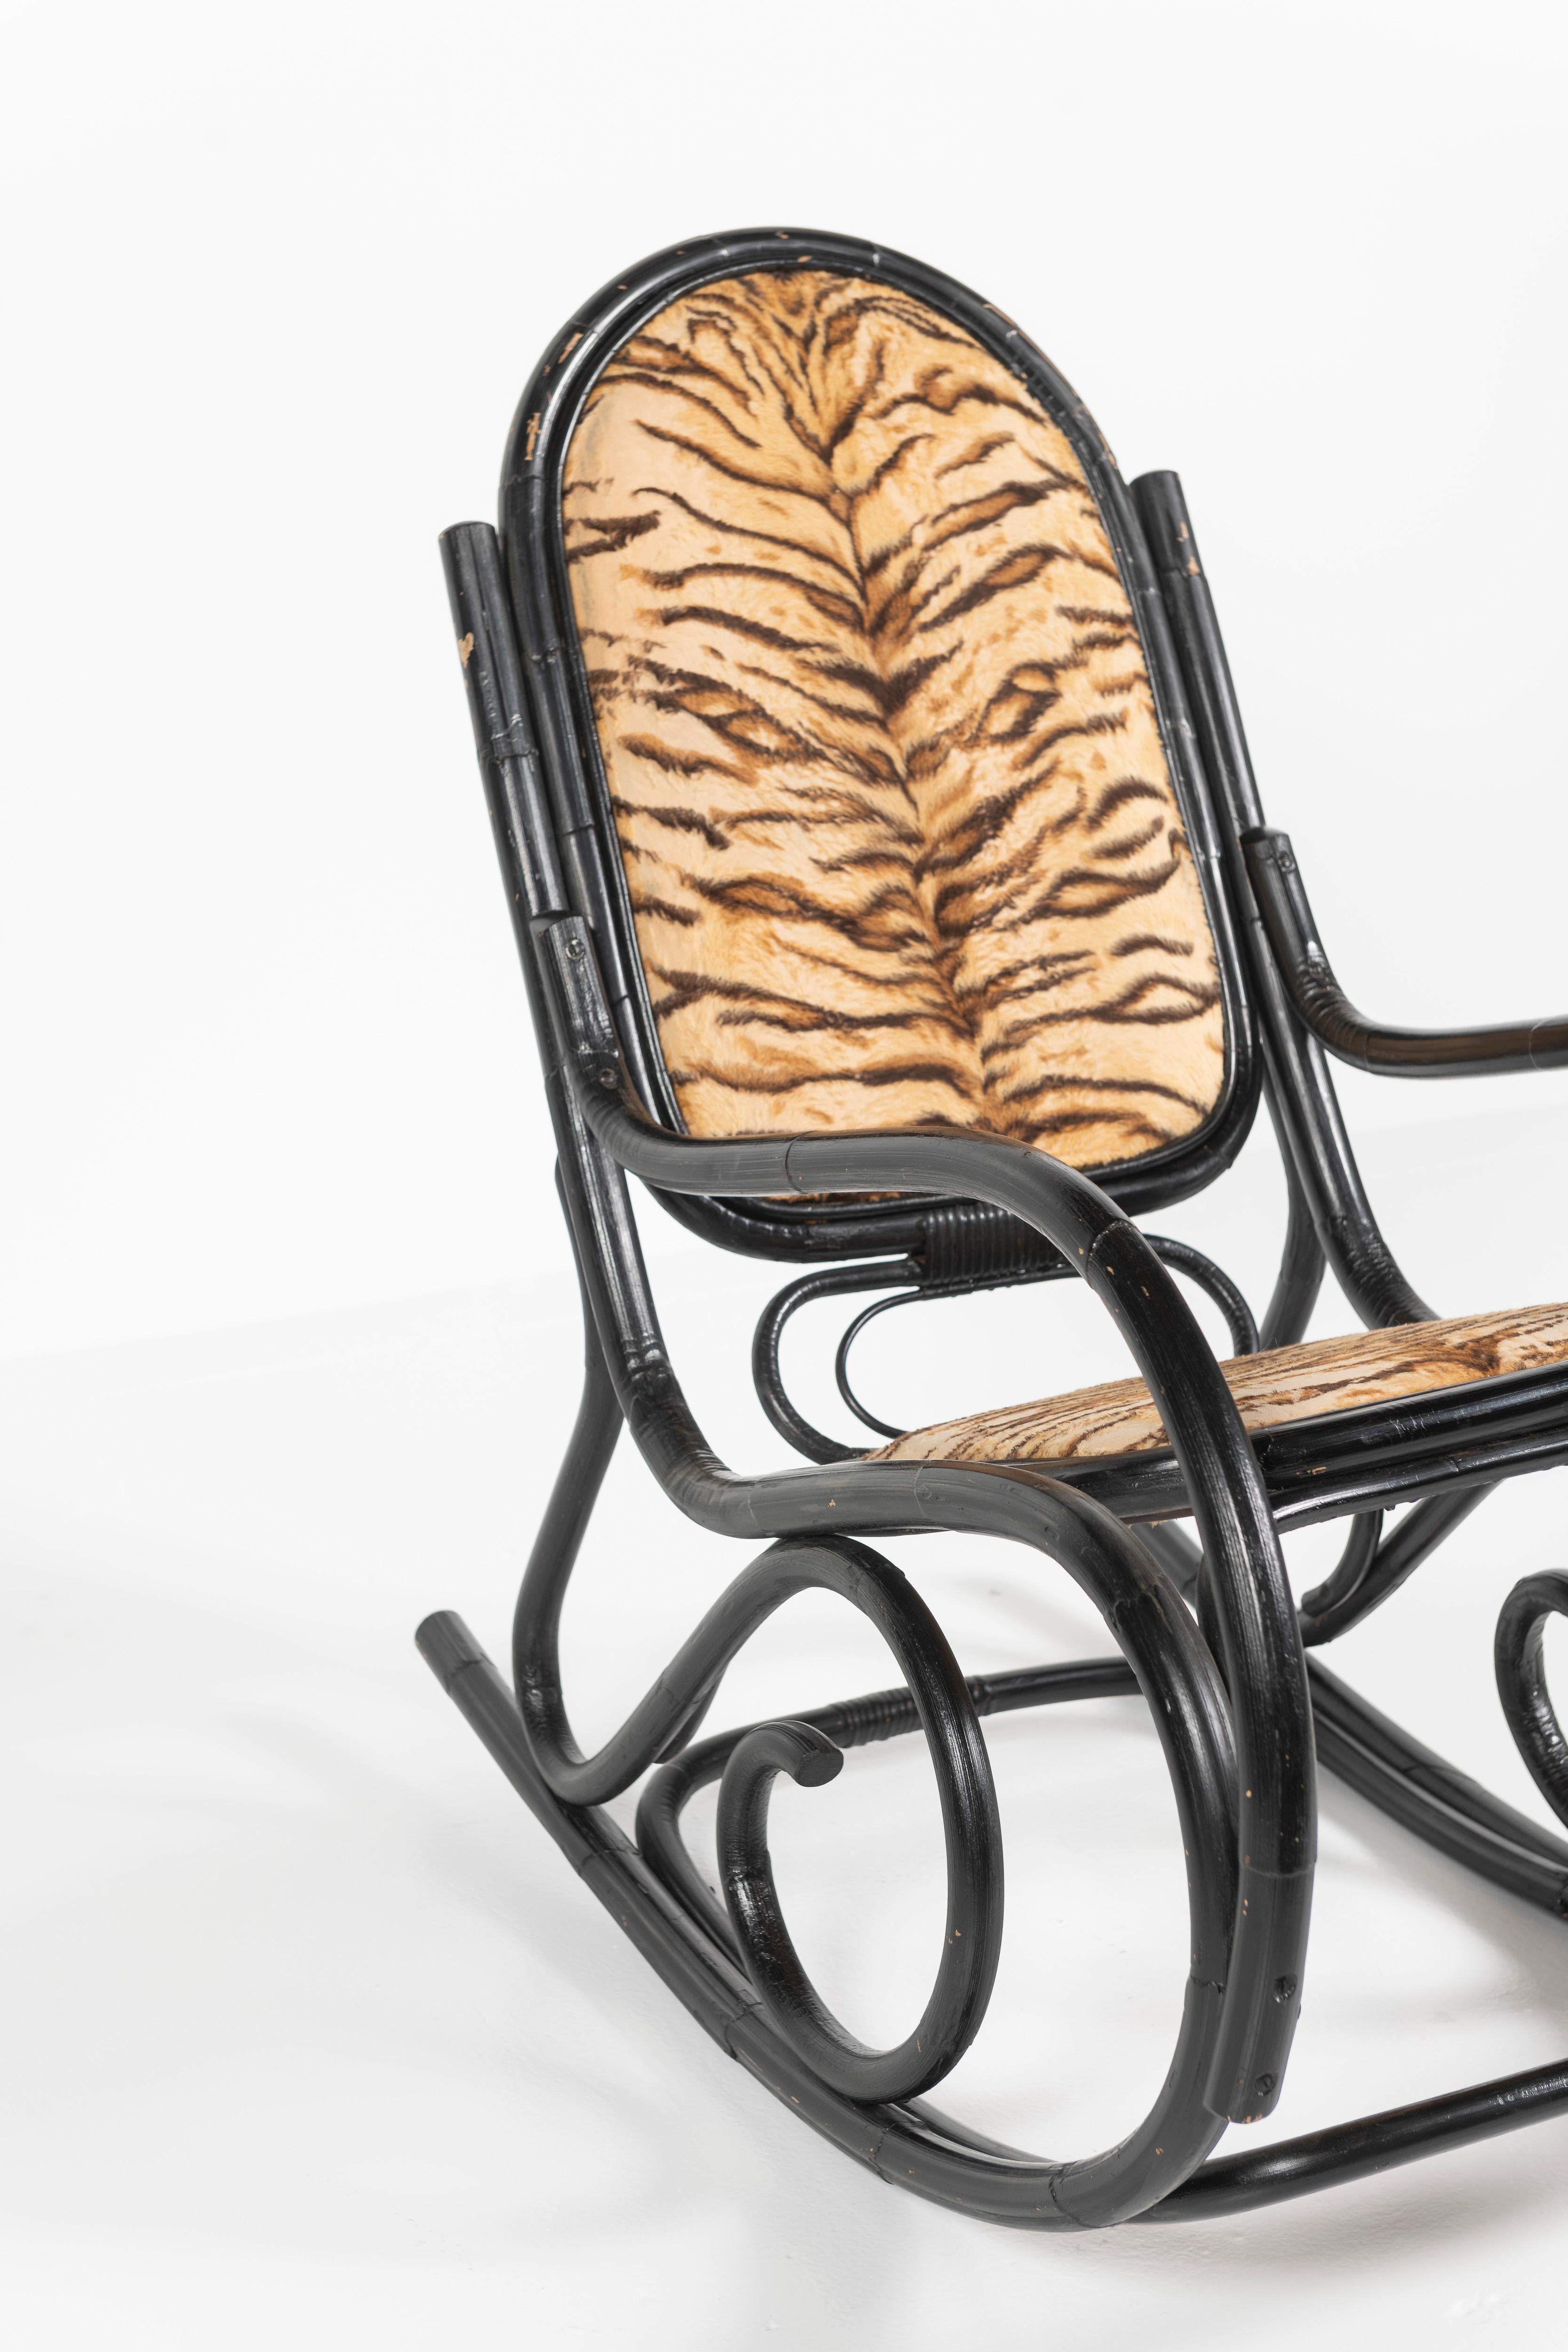 Cette chaise à bascule classique en bois courbé, fabriquée en bambou noir laqué, est attribuée à Thonet dans les années 1920. L'intérieur des sièges et le dossier ont été recouverts d'un tissu imprimé tigre, probablement en remplacement des sièges